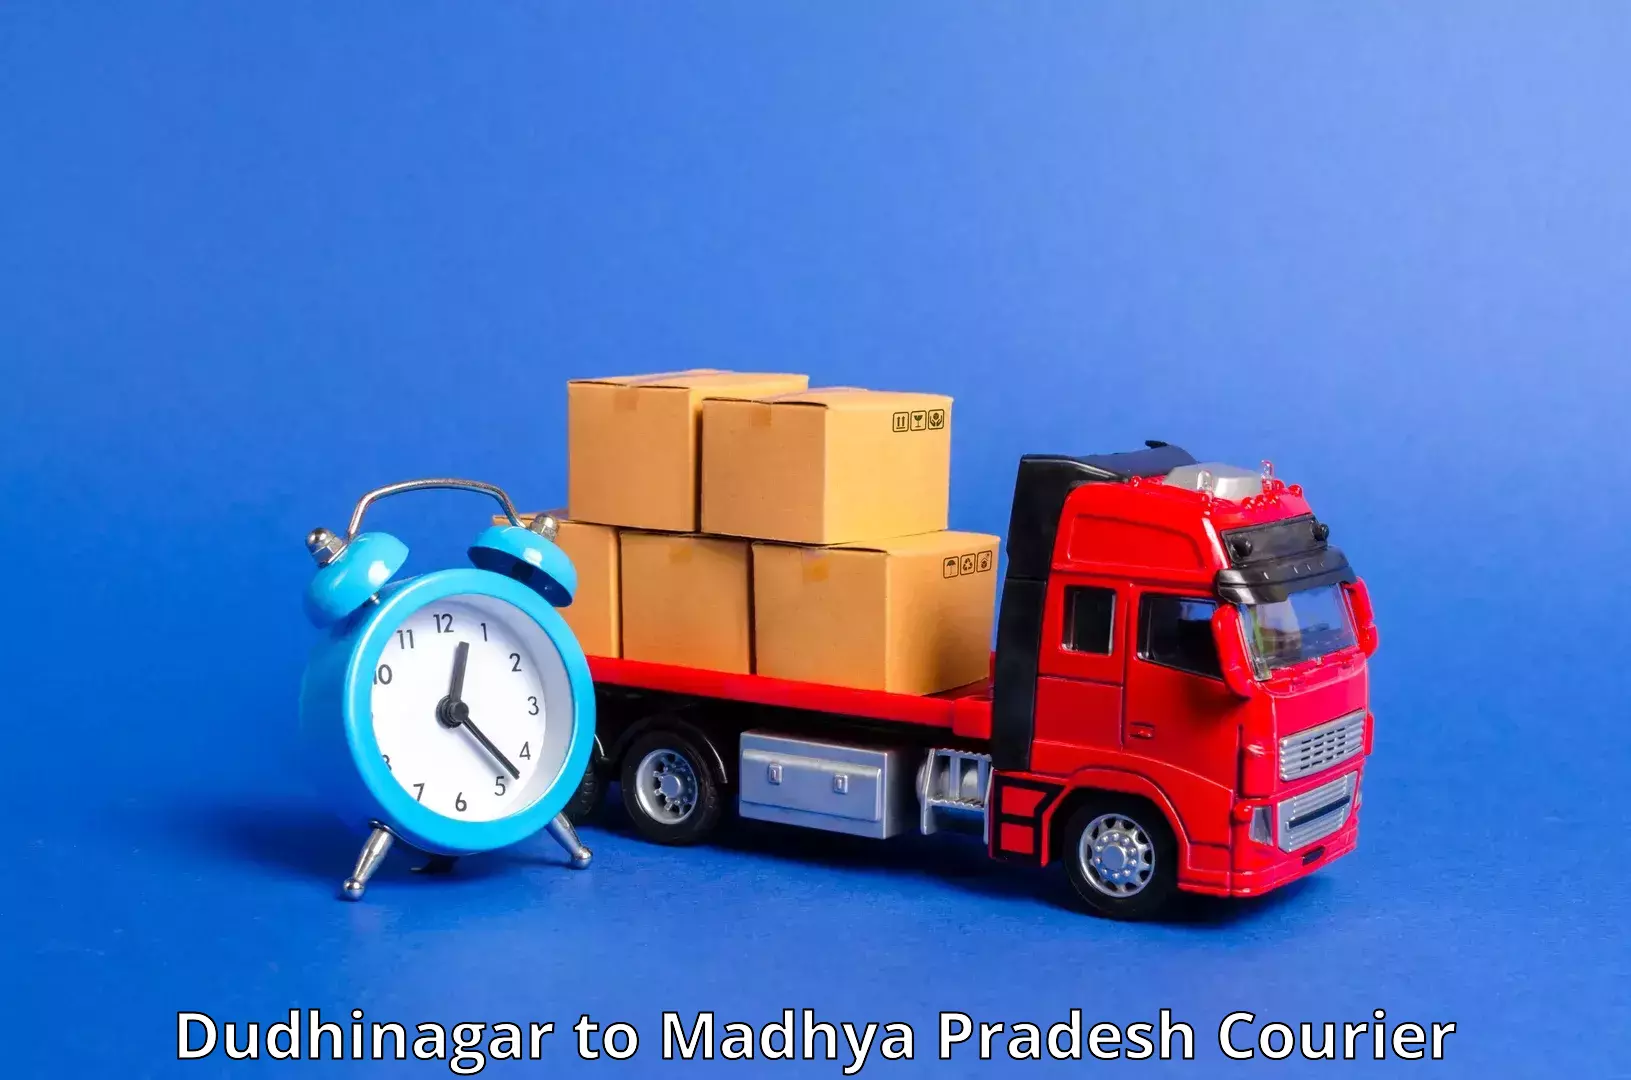 Efficient parcel service Dudhinagar to Jaitwara